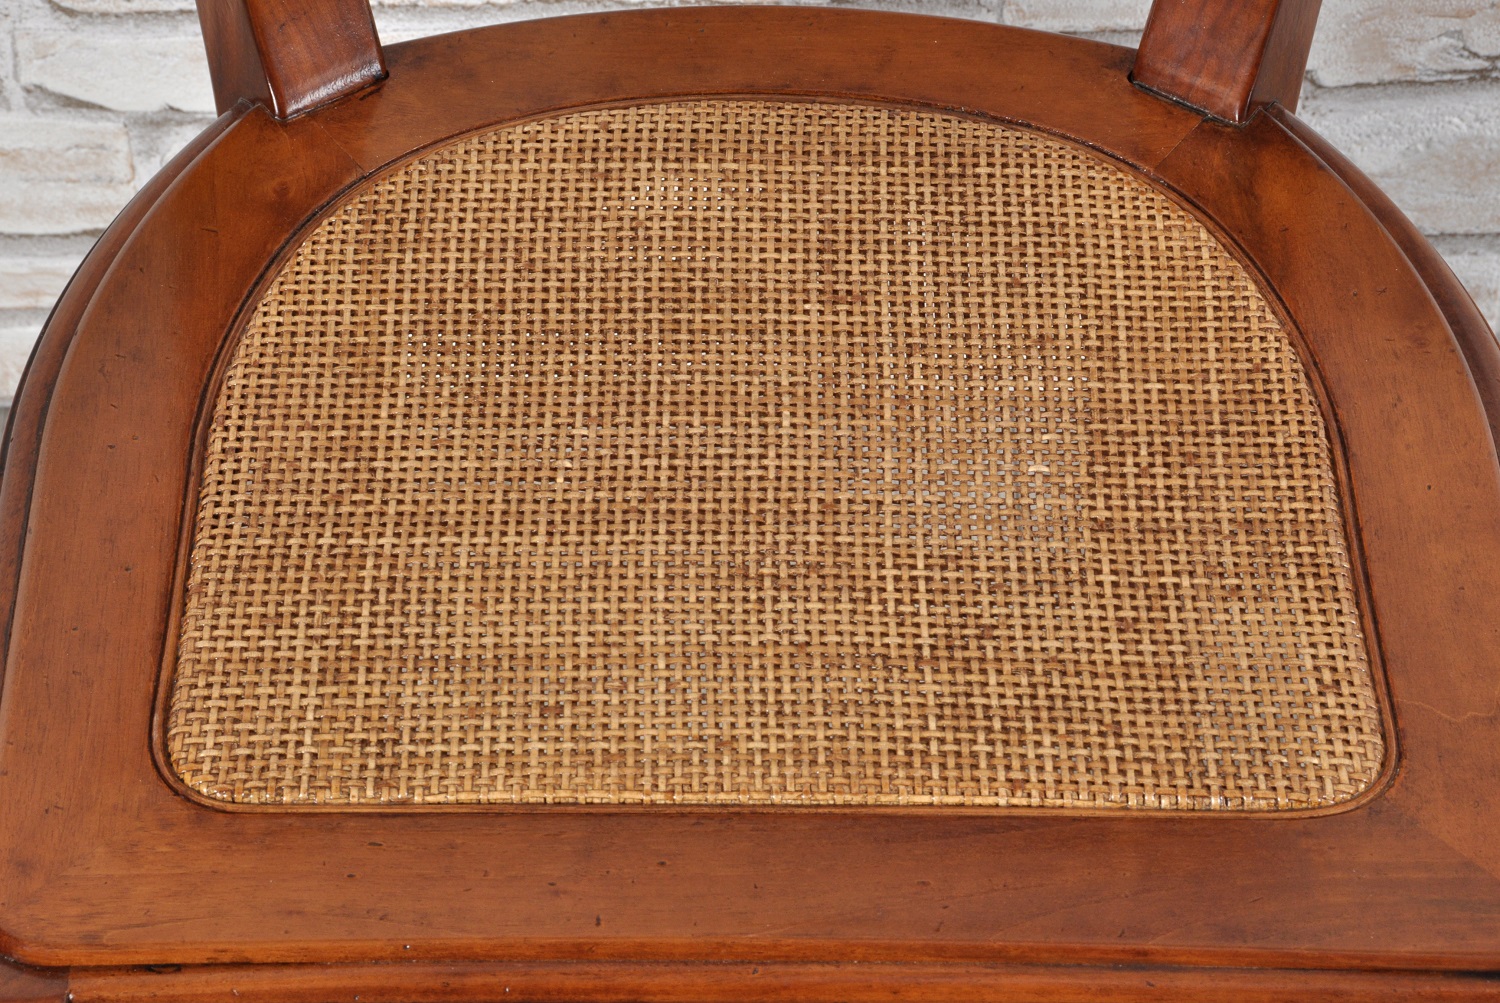 seduta prodotta in paglia di Vienna fatta a mano con telaio della sedia realizzata in stile classico direttorio Veneto